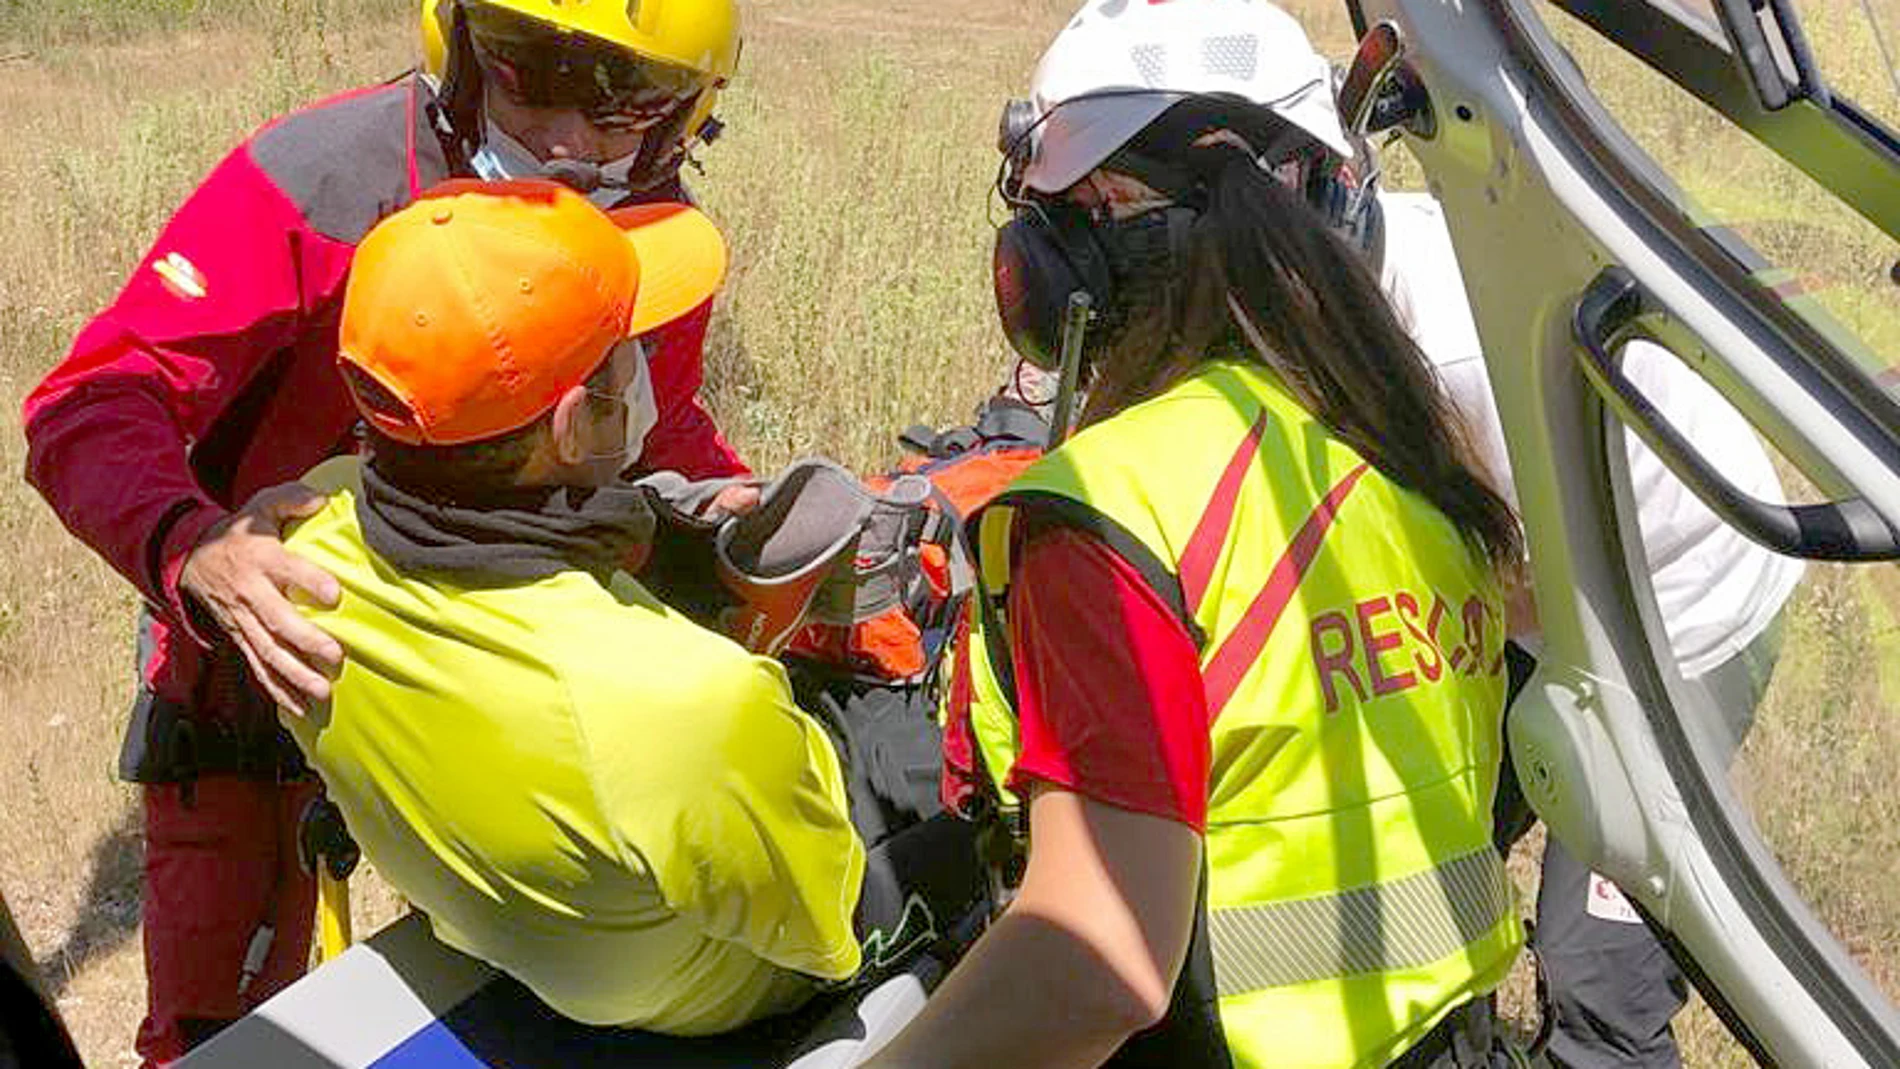 Rescate de un senderista lesionado en una pierna en las inmediaciones de la Laguna Cebollera, en Sotillo del Rincón, Soria